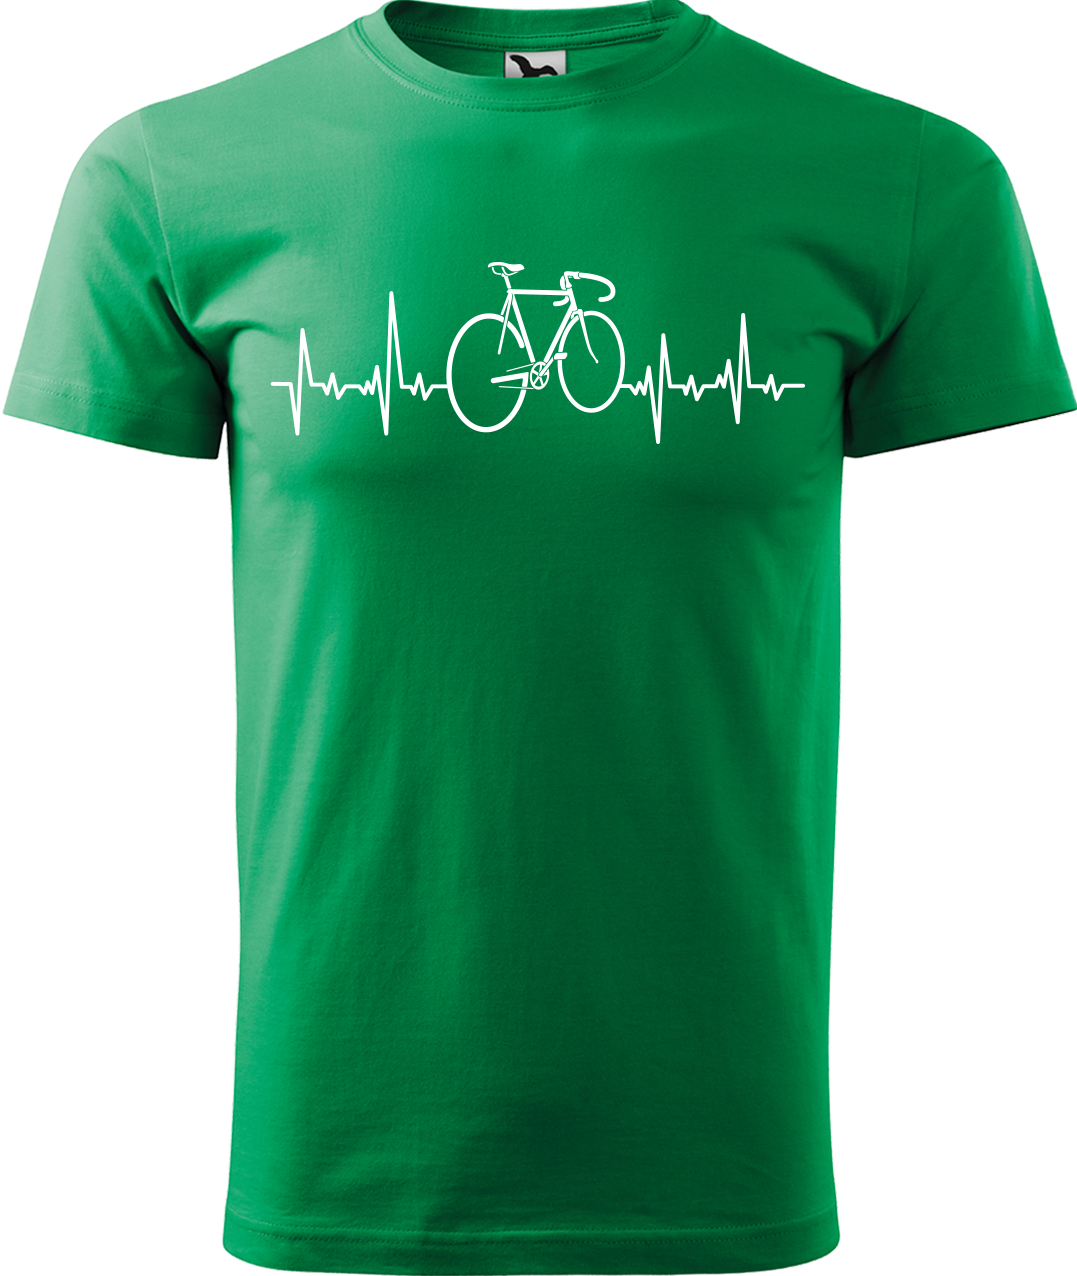 Pánské tričko s kolem - Cyklistův kardiogram Velikost: 2XL, Barva: Středně zelená (16)